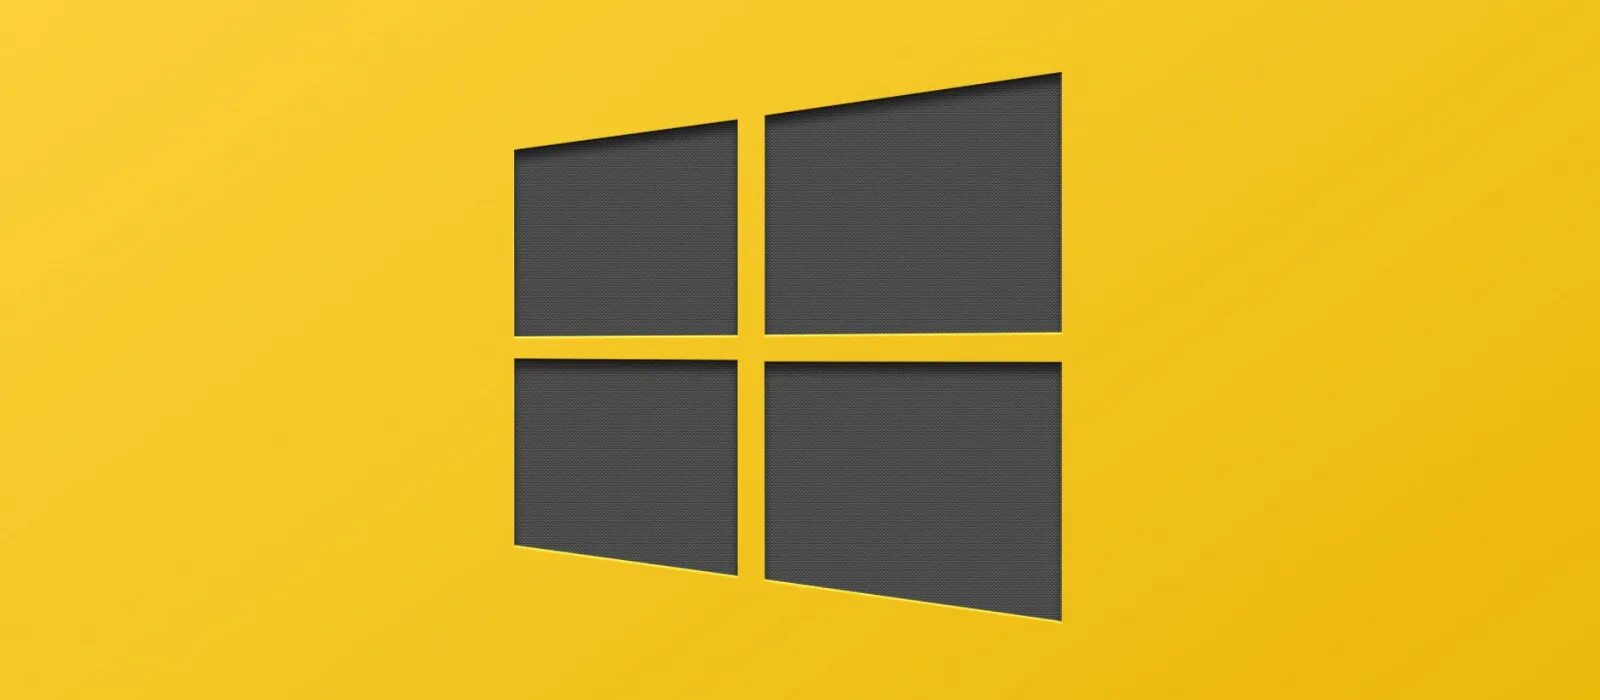 Обои Windows 10. Жёлтый виндовс 10. Фон виндовс 10. Желтый фон виндовс 10. Windows bt windows 7